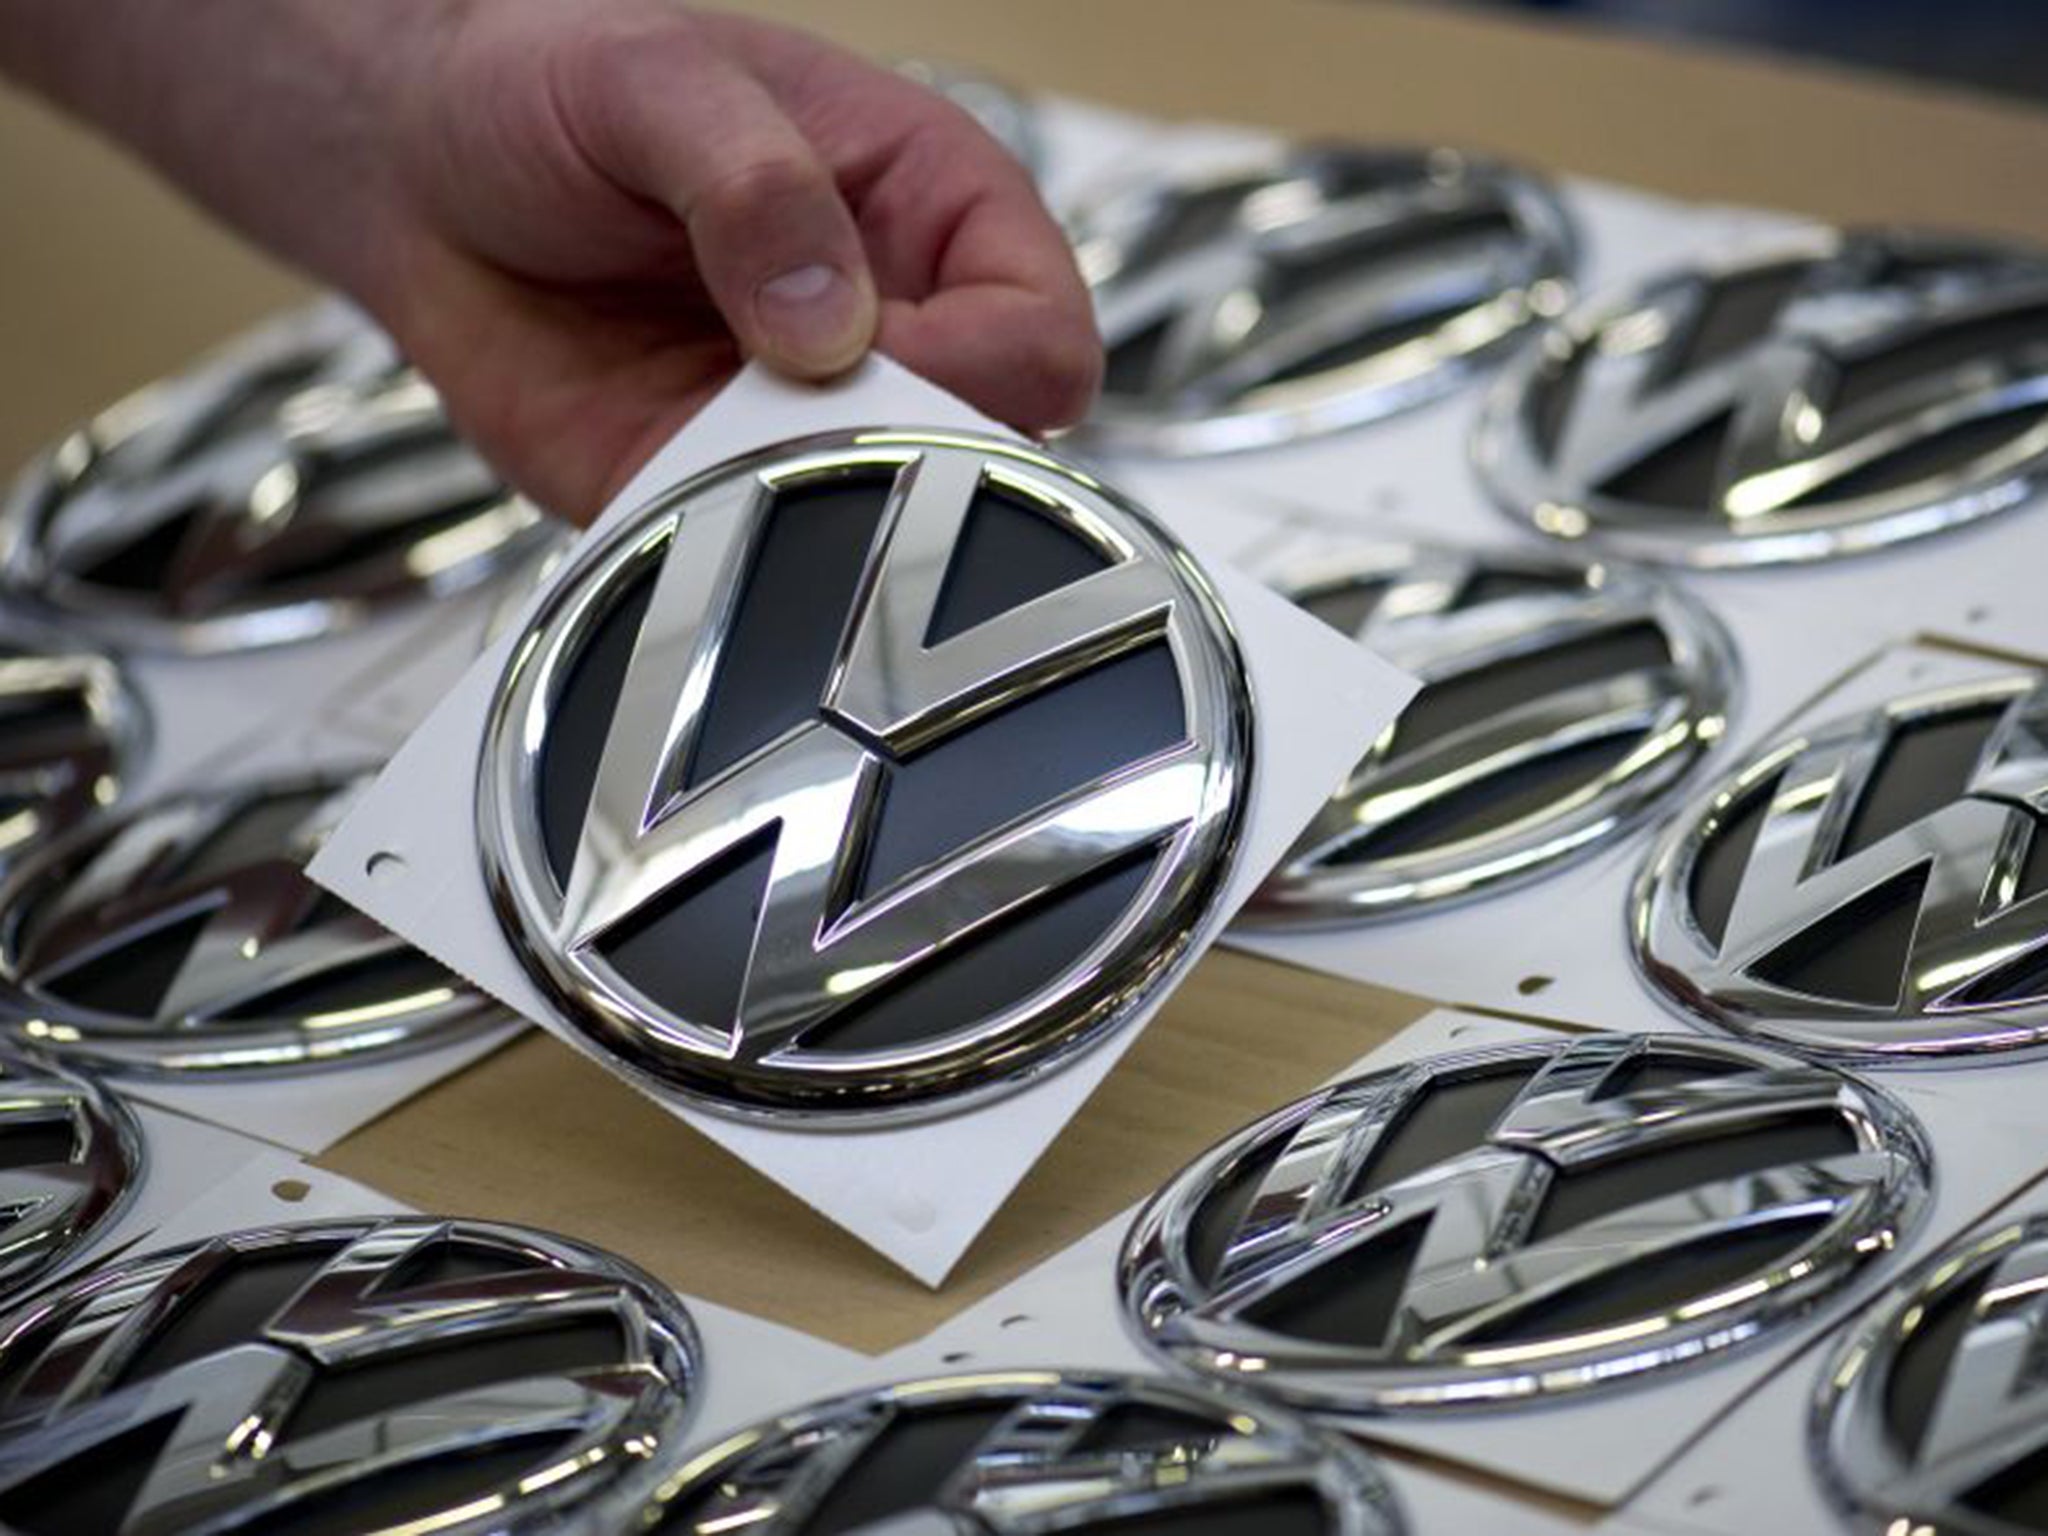 Volkswagen is said to have kept UK customers ‘in the dark